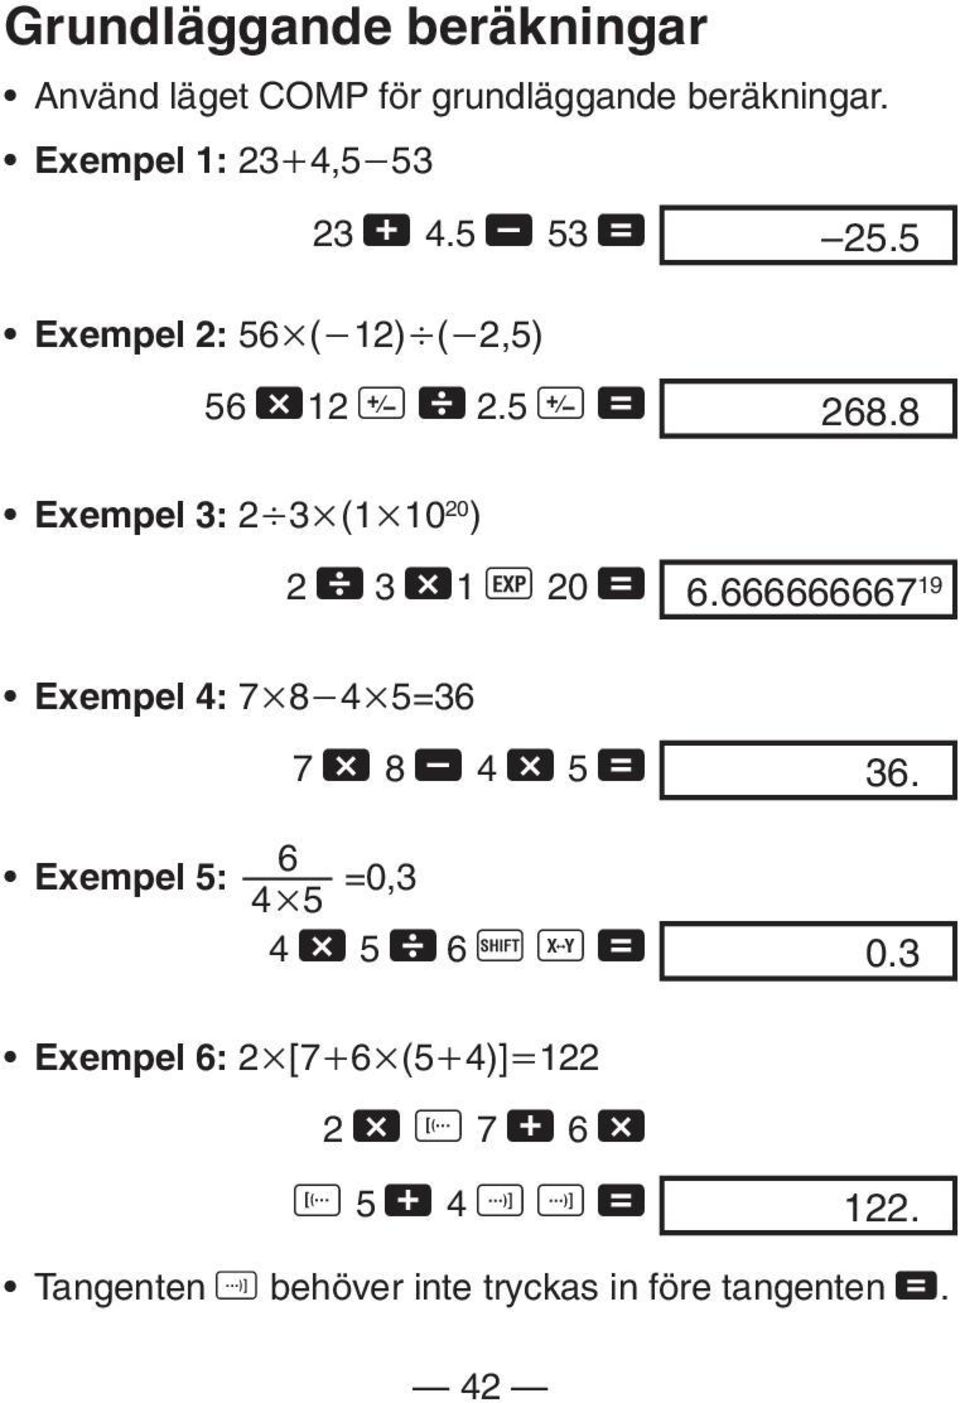 5 E = Exempel 3: 2 3 (1 10 20 ) 2 \ 3-1 e 20 = Exempel 4: 7 8 4 5=36 7-8, 4-5 = Exempel 5: 6 =0,3 4 5